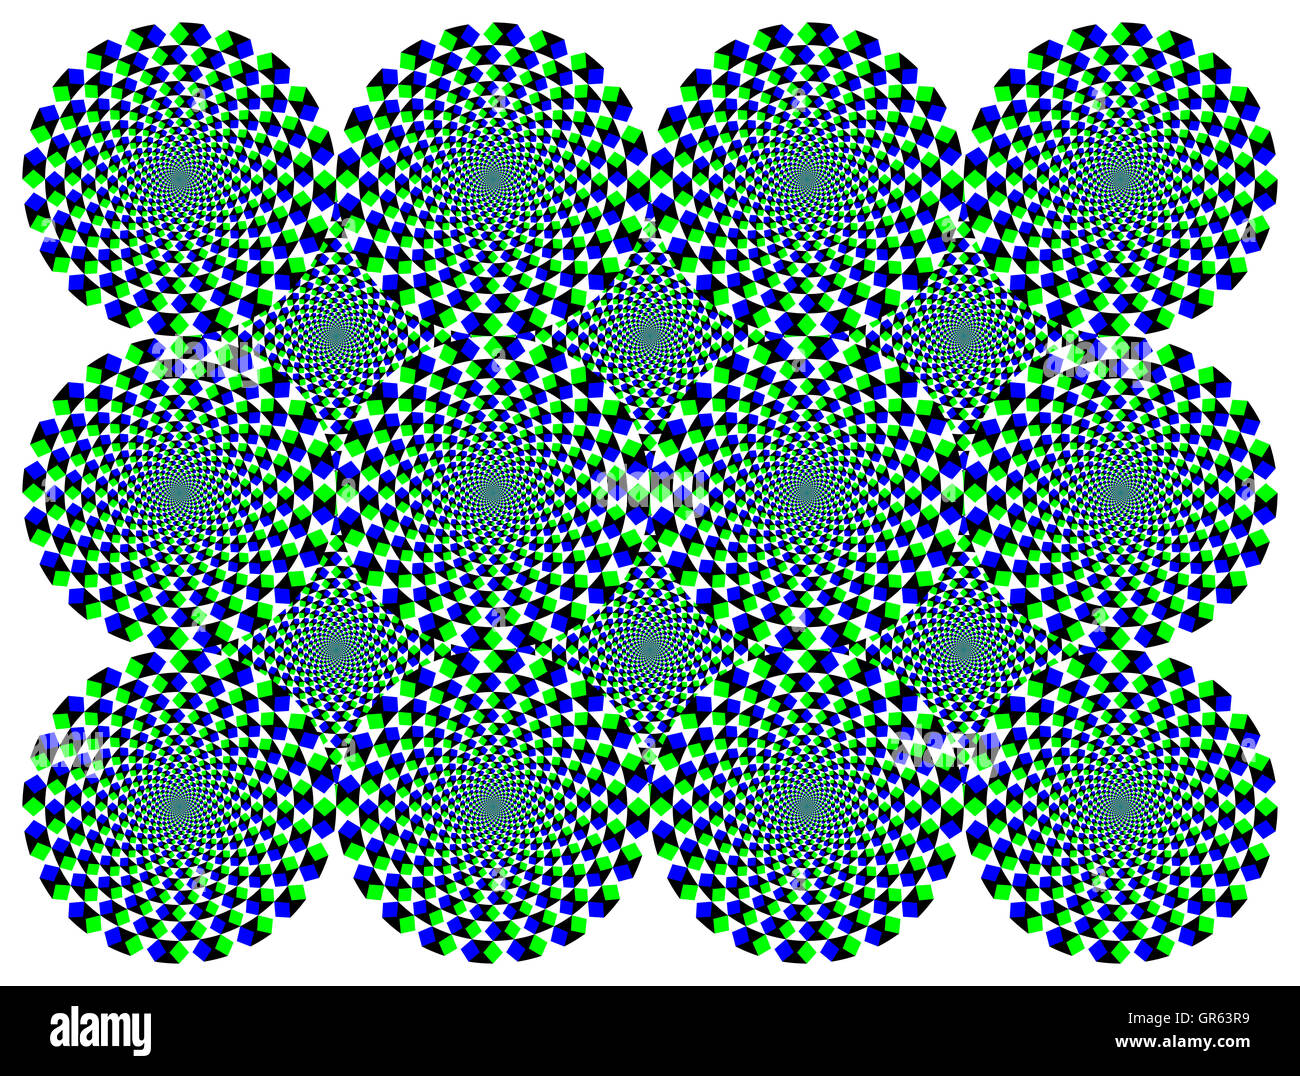 Ruotare le ruote di diamante illusione di movimento. Le ruote con il blu e il verde diamanti sembrano muoversi in senso orario quando si spostano gli occhi. Foto Stock